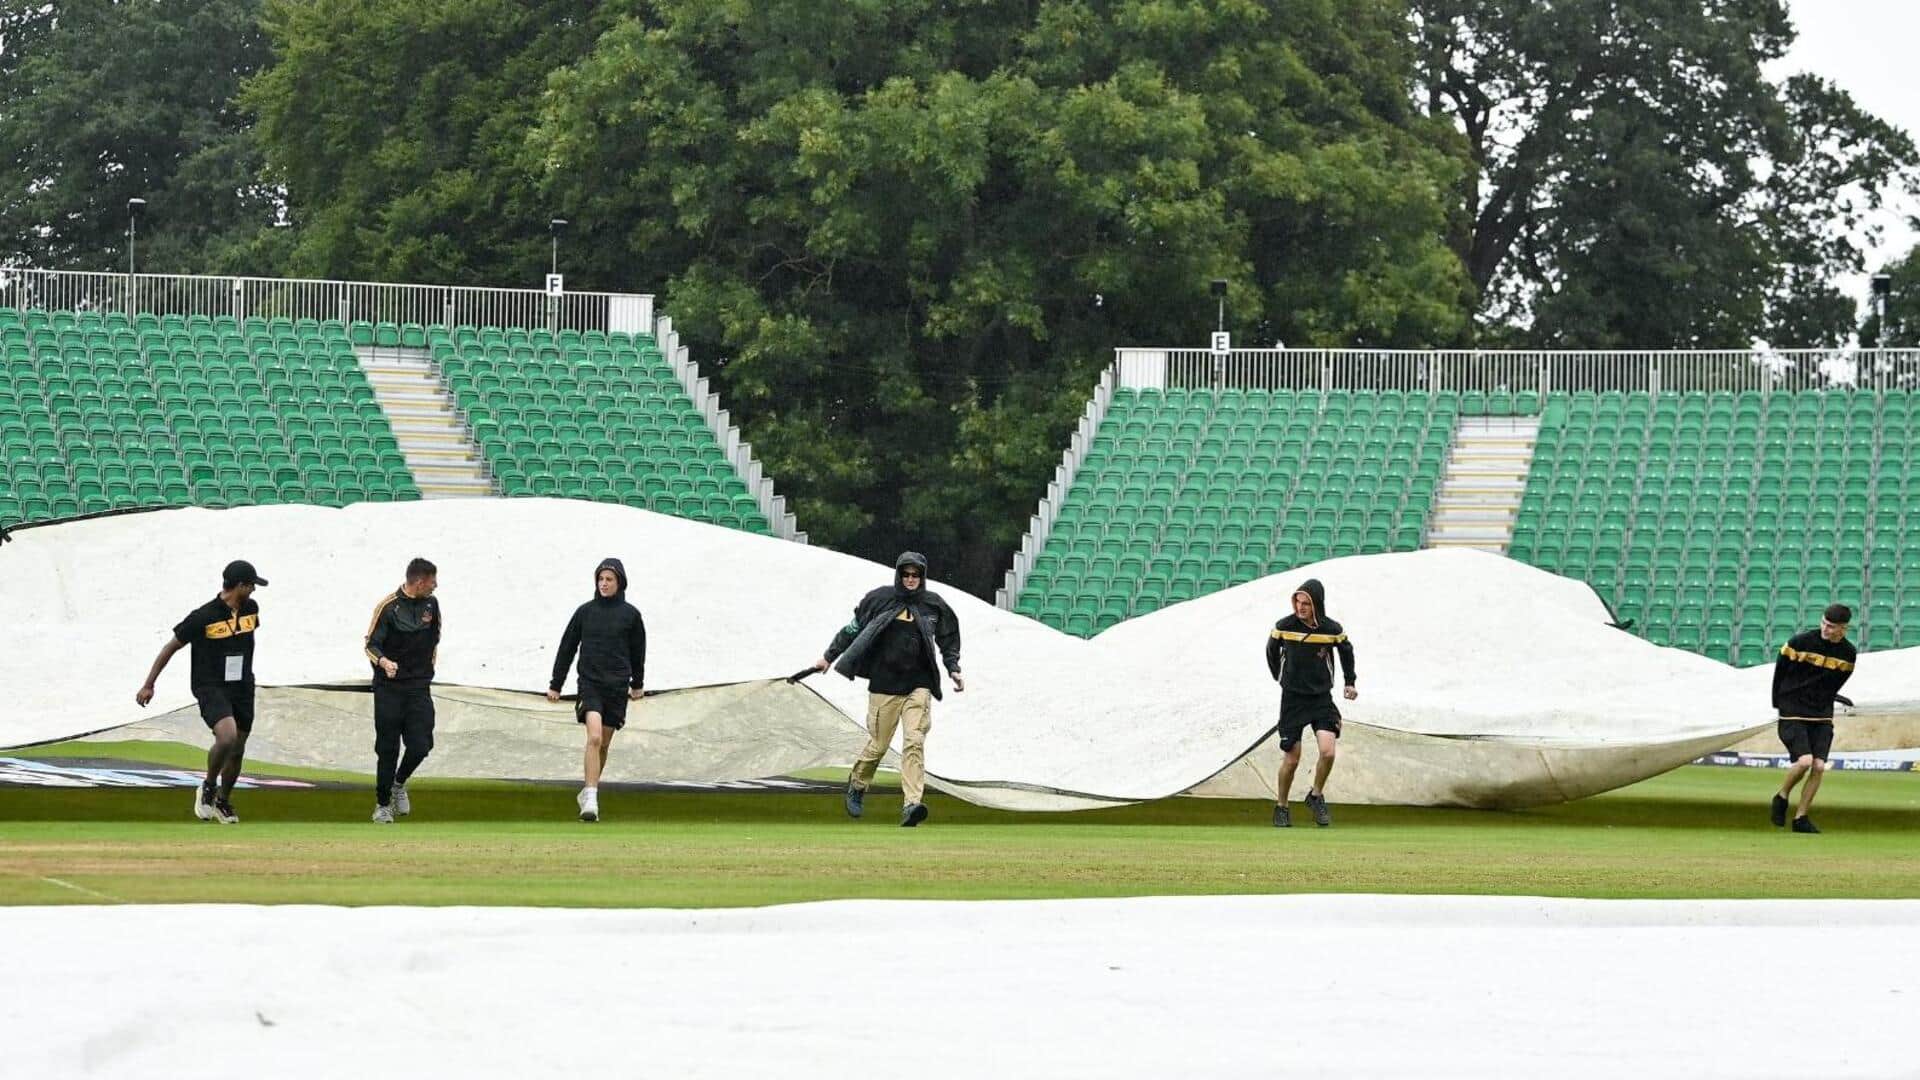 आयरलैंड बनाम भारत, तीसरा टी-20: डबलिन में बारिश के चलते टॉस में हो रही देरी